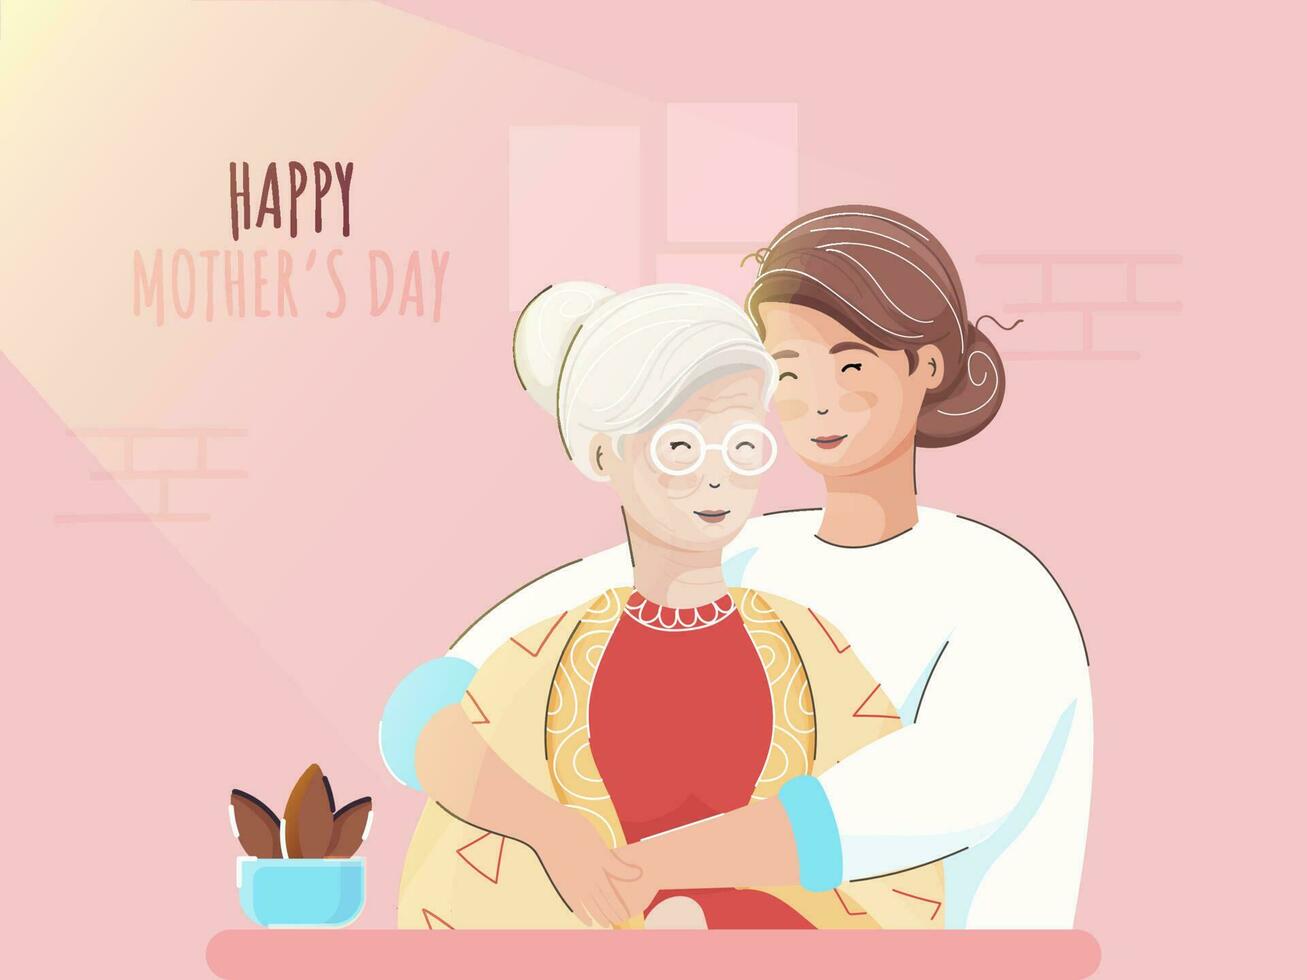 vektor illustration av ung flicka kramas henne mor från sida, rosa vägg bakgrund. begrepp för Lycklig mors dag.